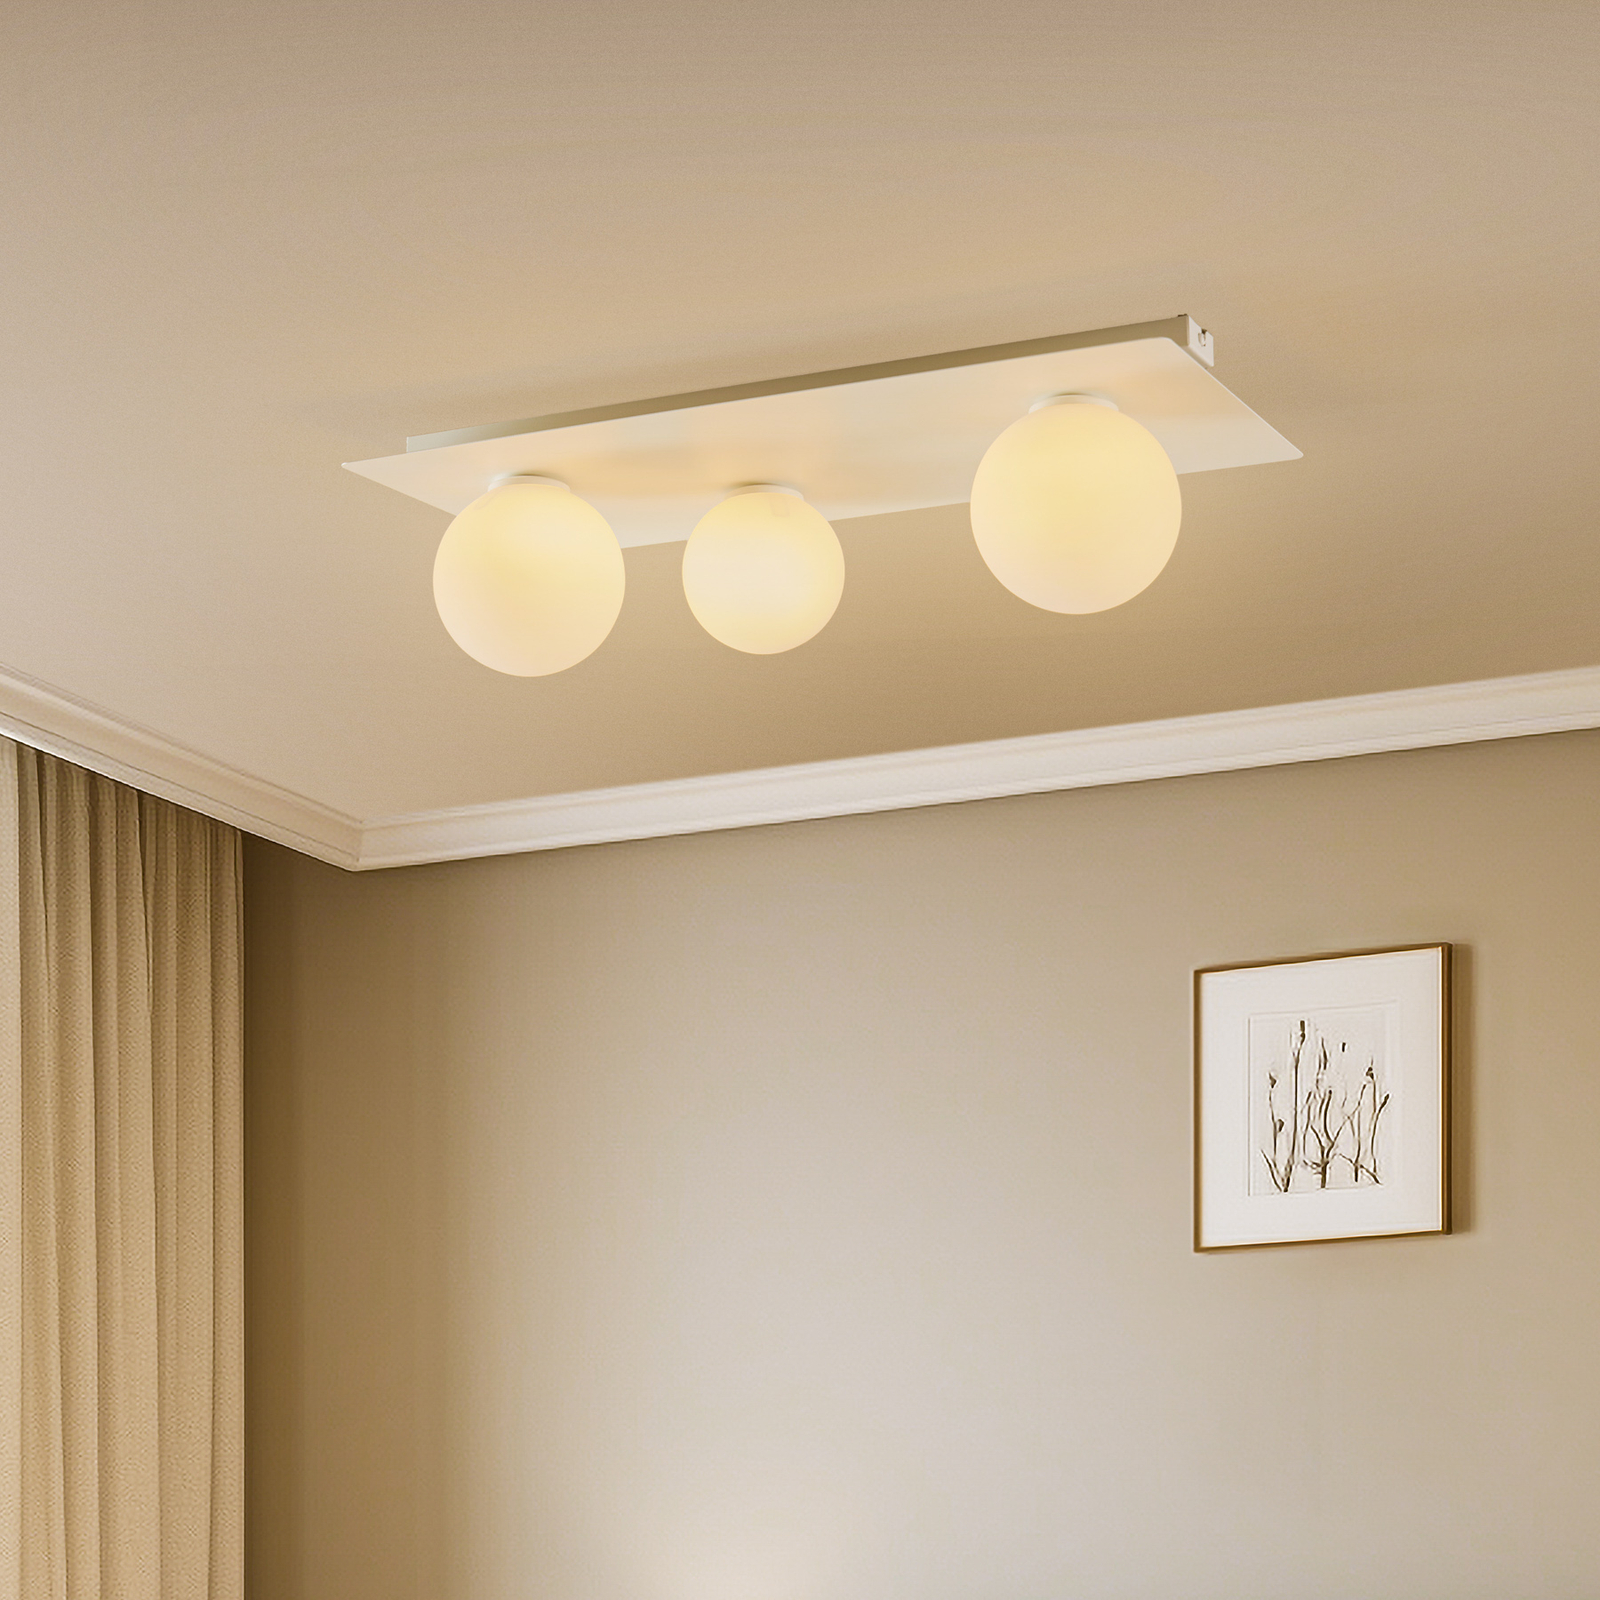 Firn ceiling light, angular, 3-bulb, white